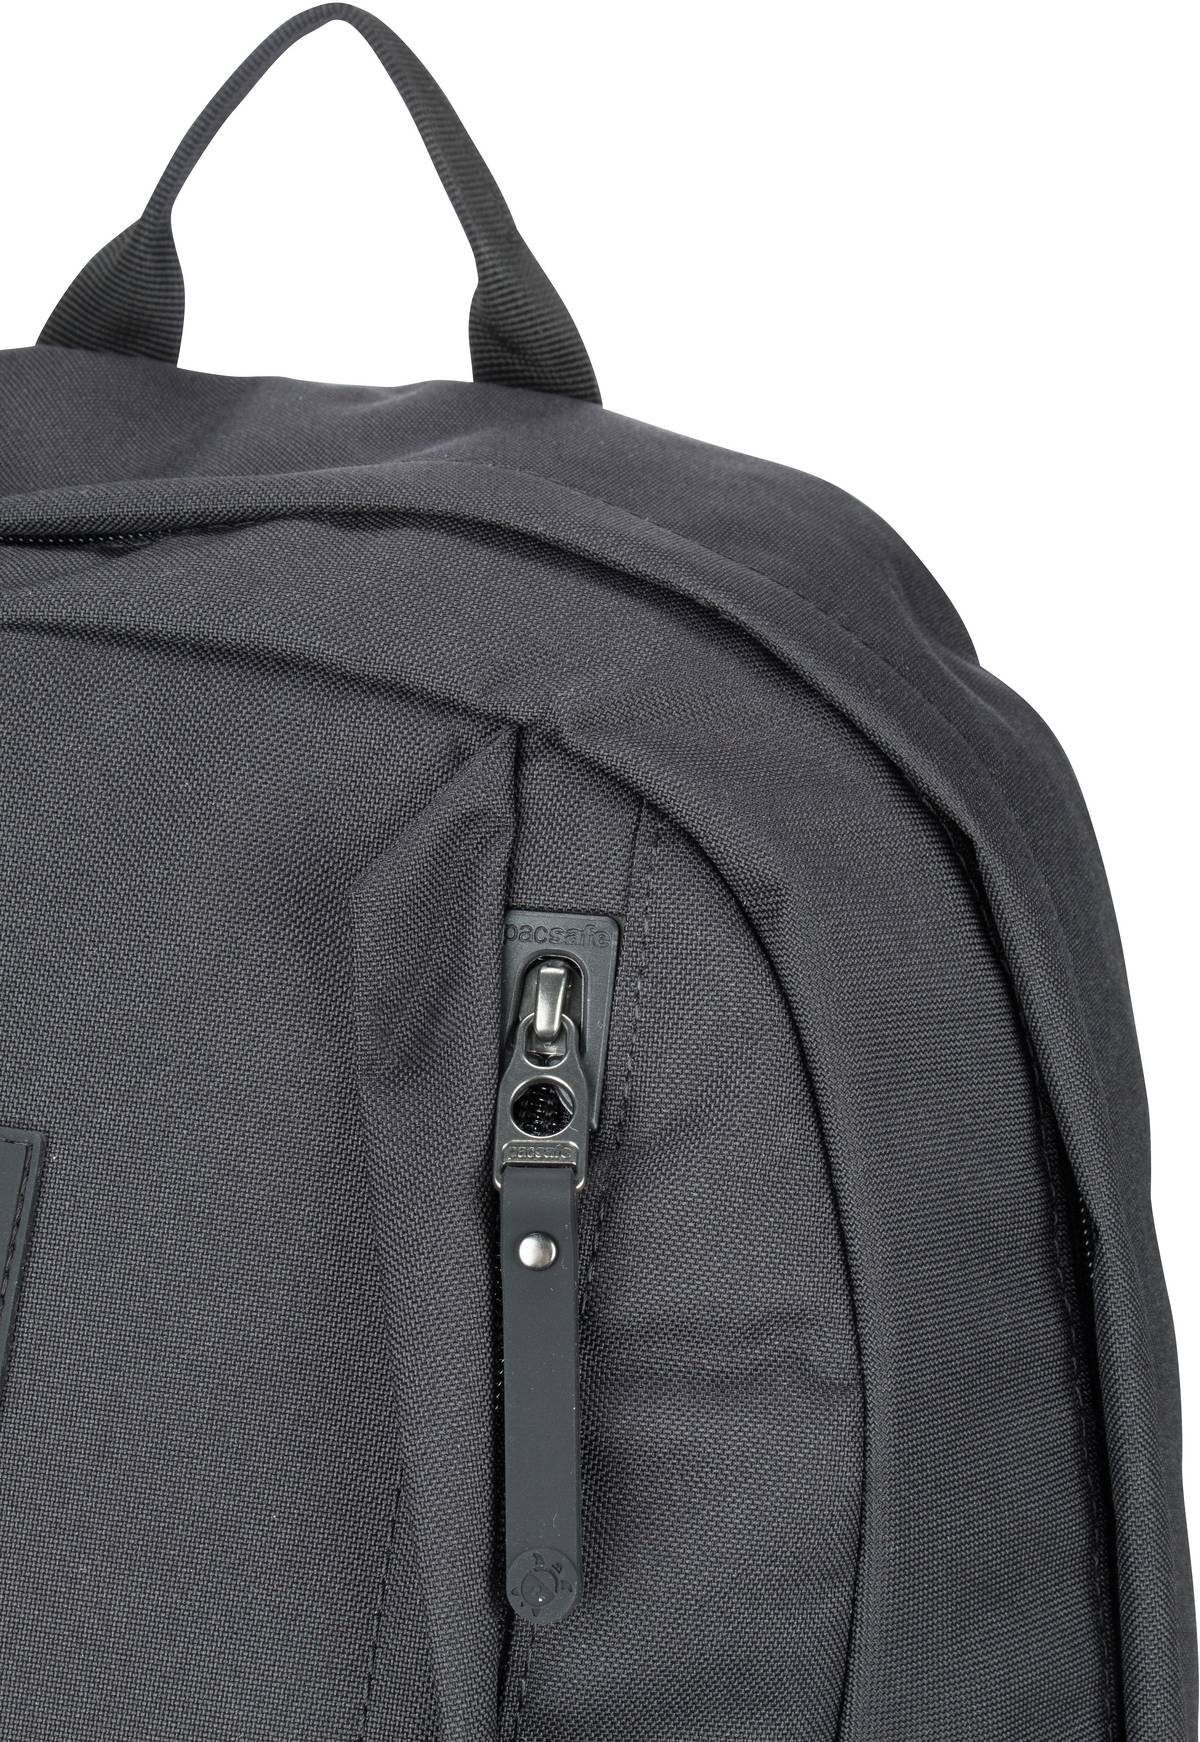 Pacsafe GO 25L Backpack - Black